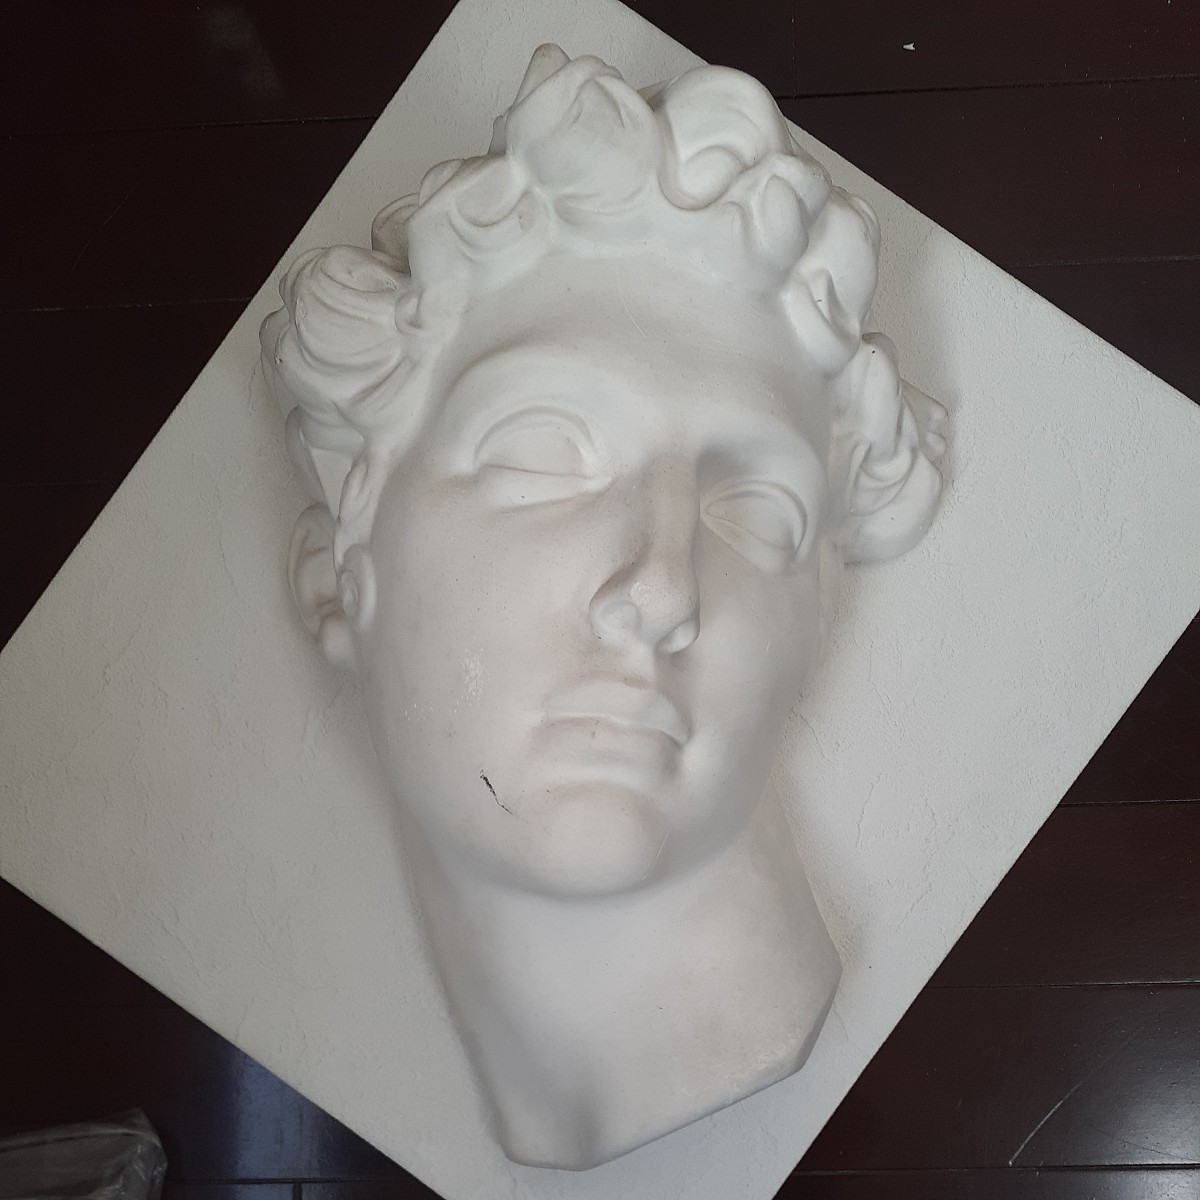 石膏像 メディチ 頭像 胸像 オブジェ 西洋彫刻 置物 デッサン 美術教材